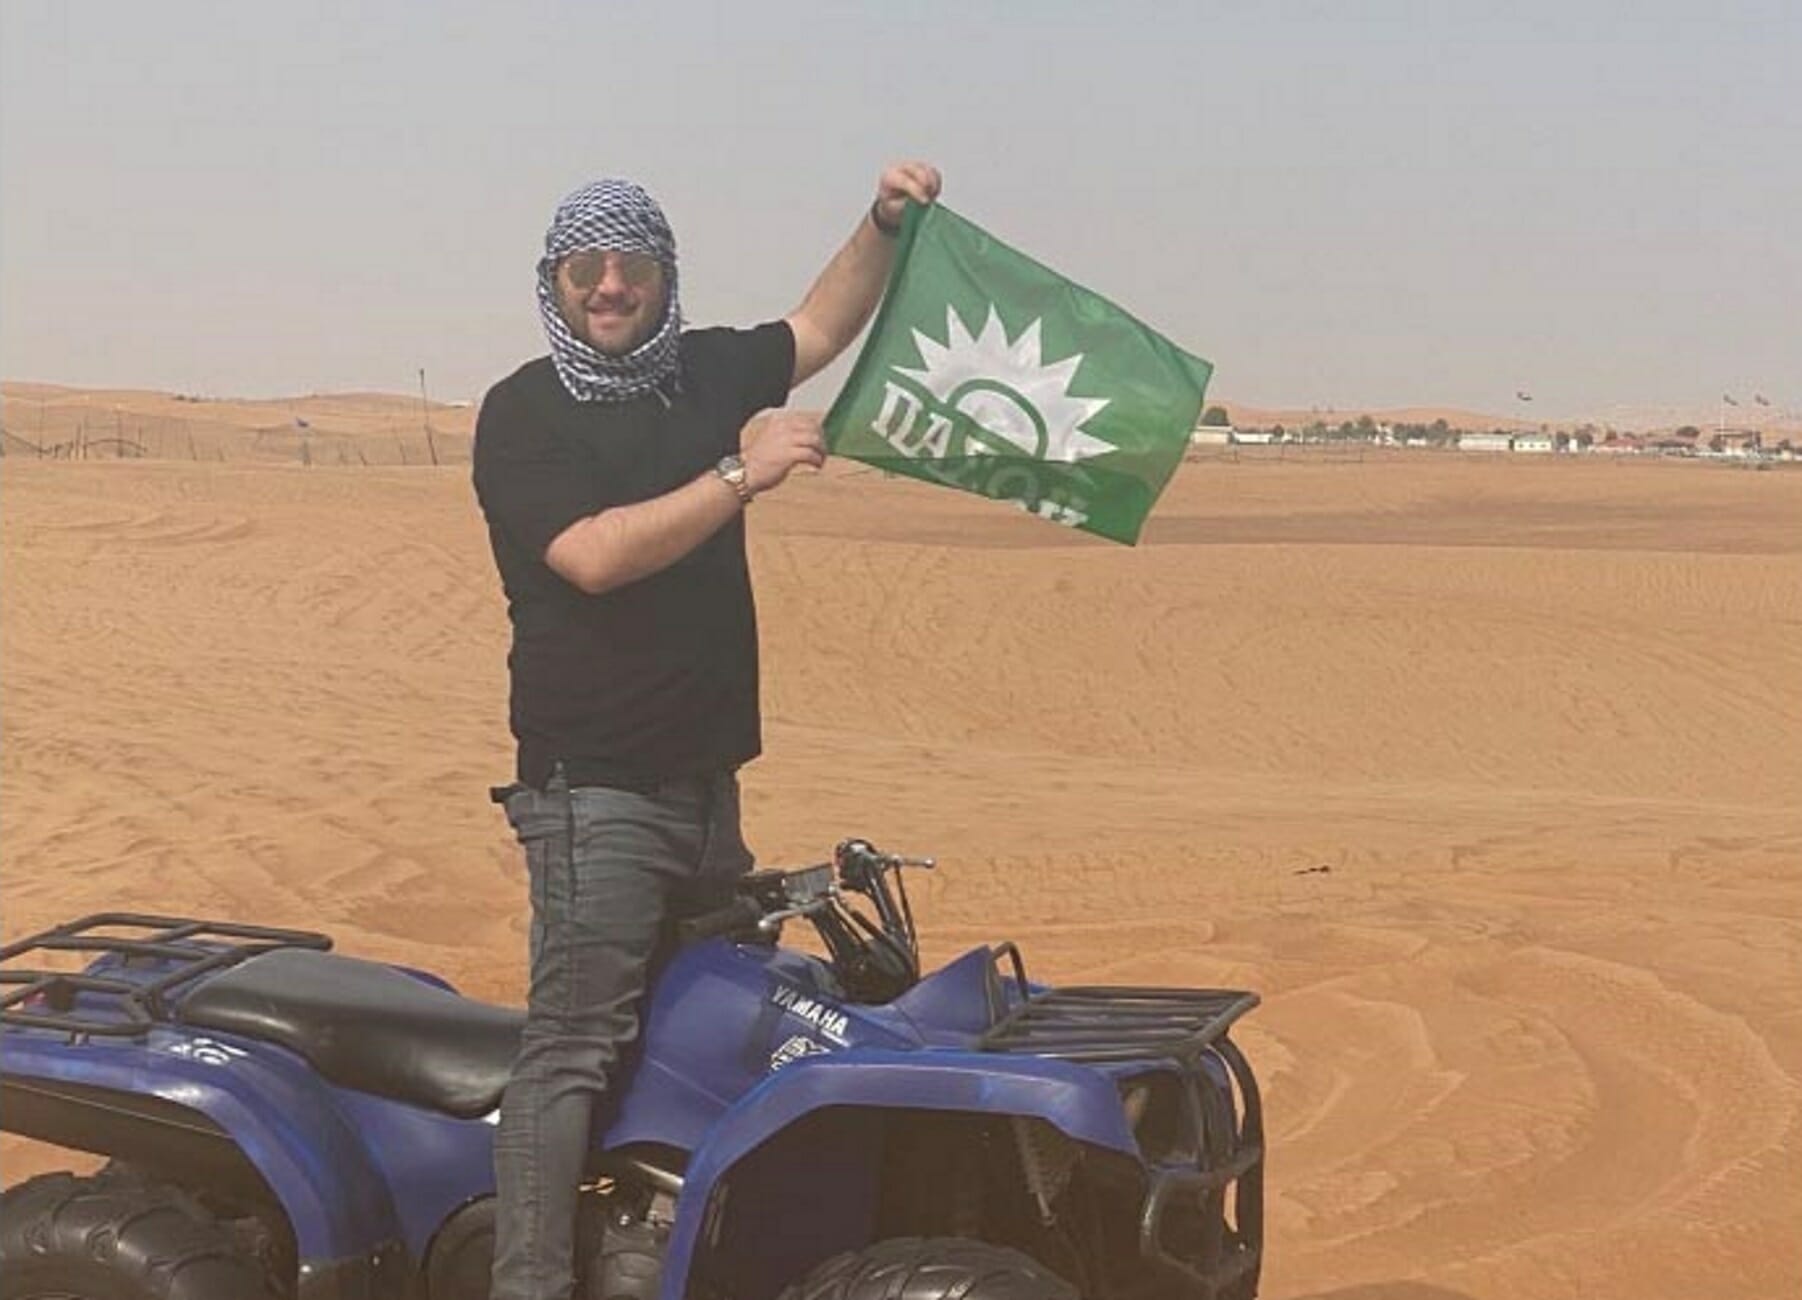 Τρίκαλα: Μόνο ΠΑΣΟΚ! Ταξίδεψε στο Ντουμπάι και όλοι ρωτούσαν για τη σημαία που είχε πάντα μαζί (Φωτό)